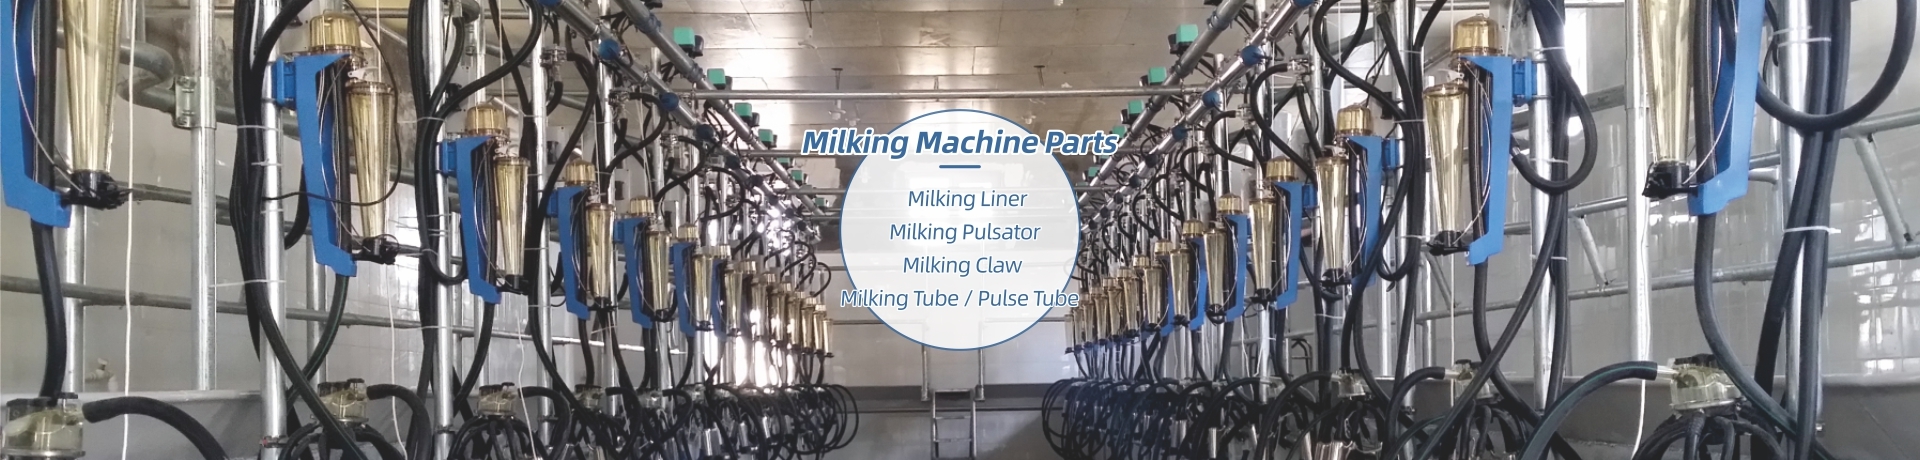 Milk Machine Parts